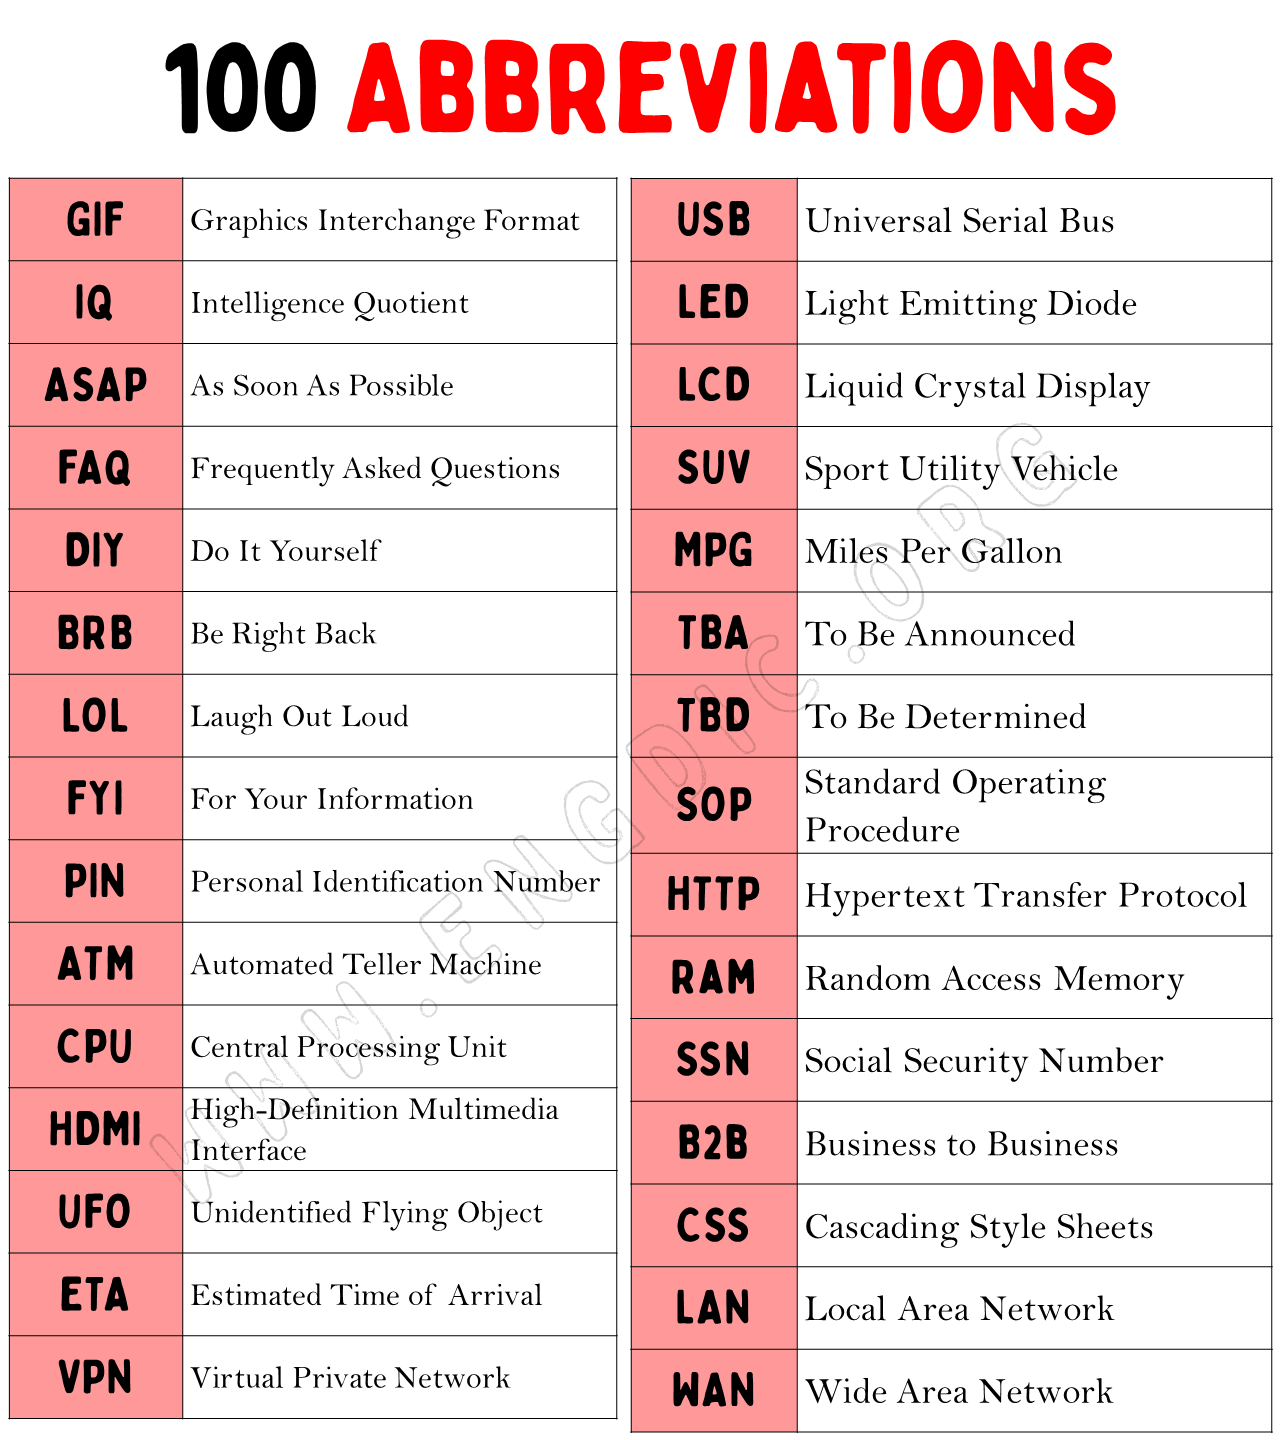 100 Abbreviations